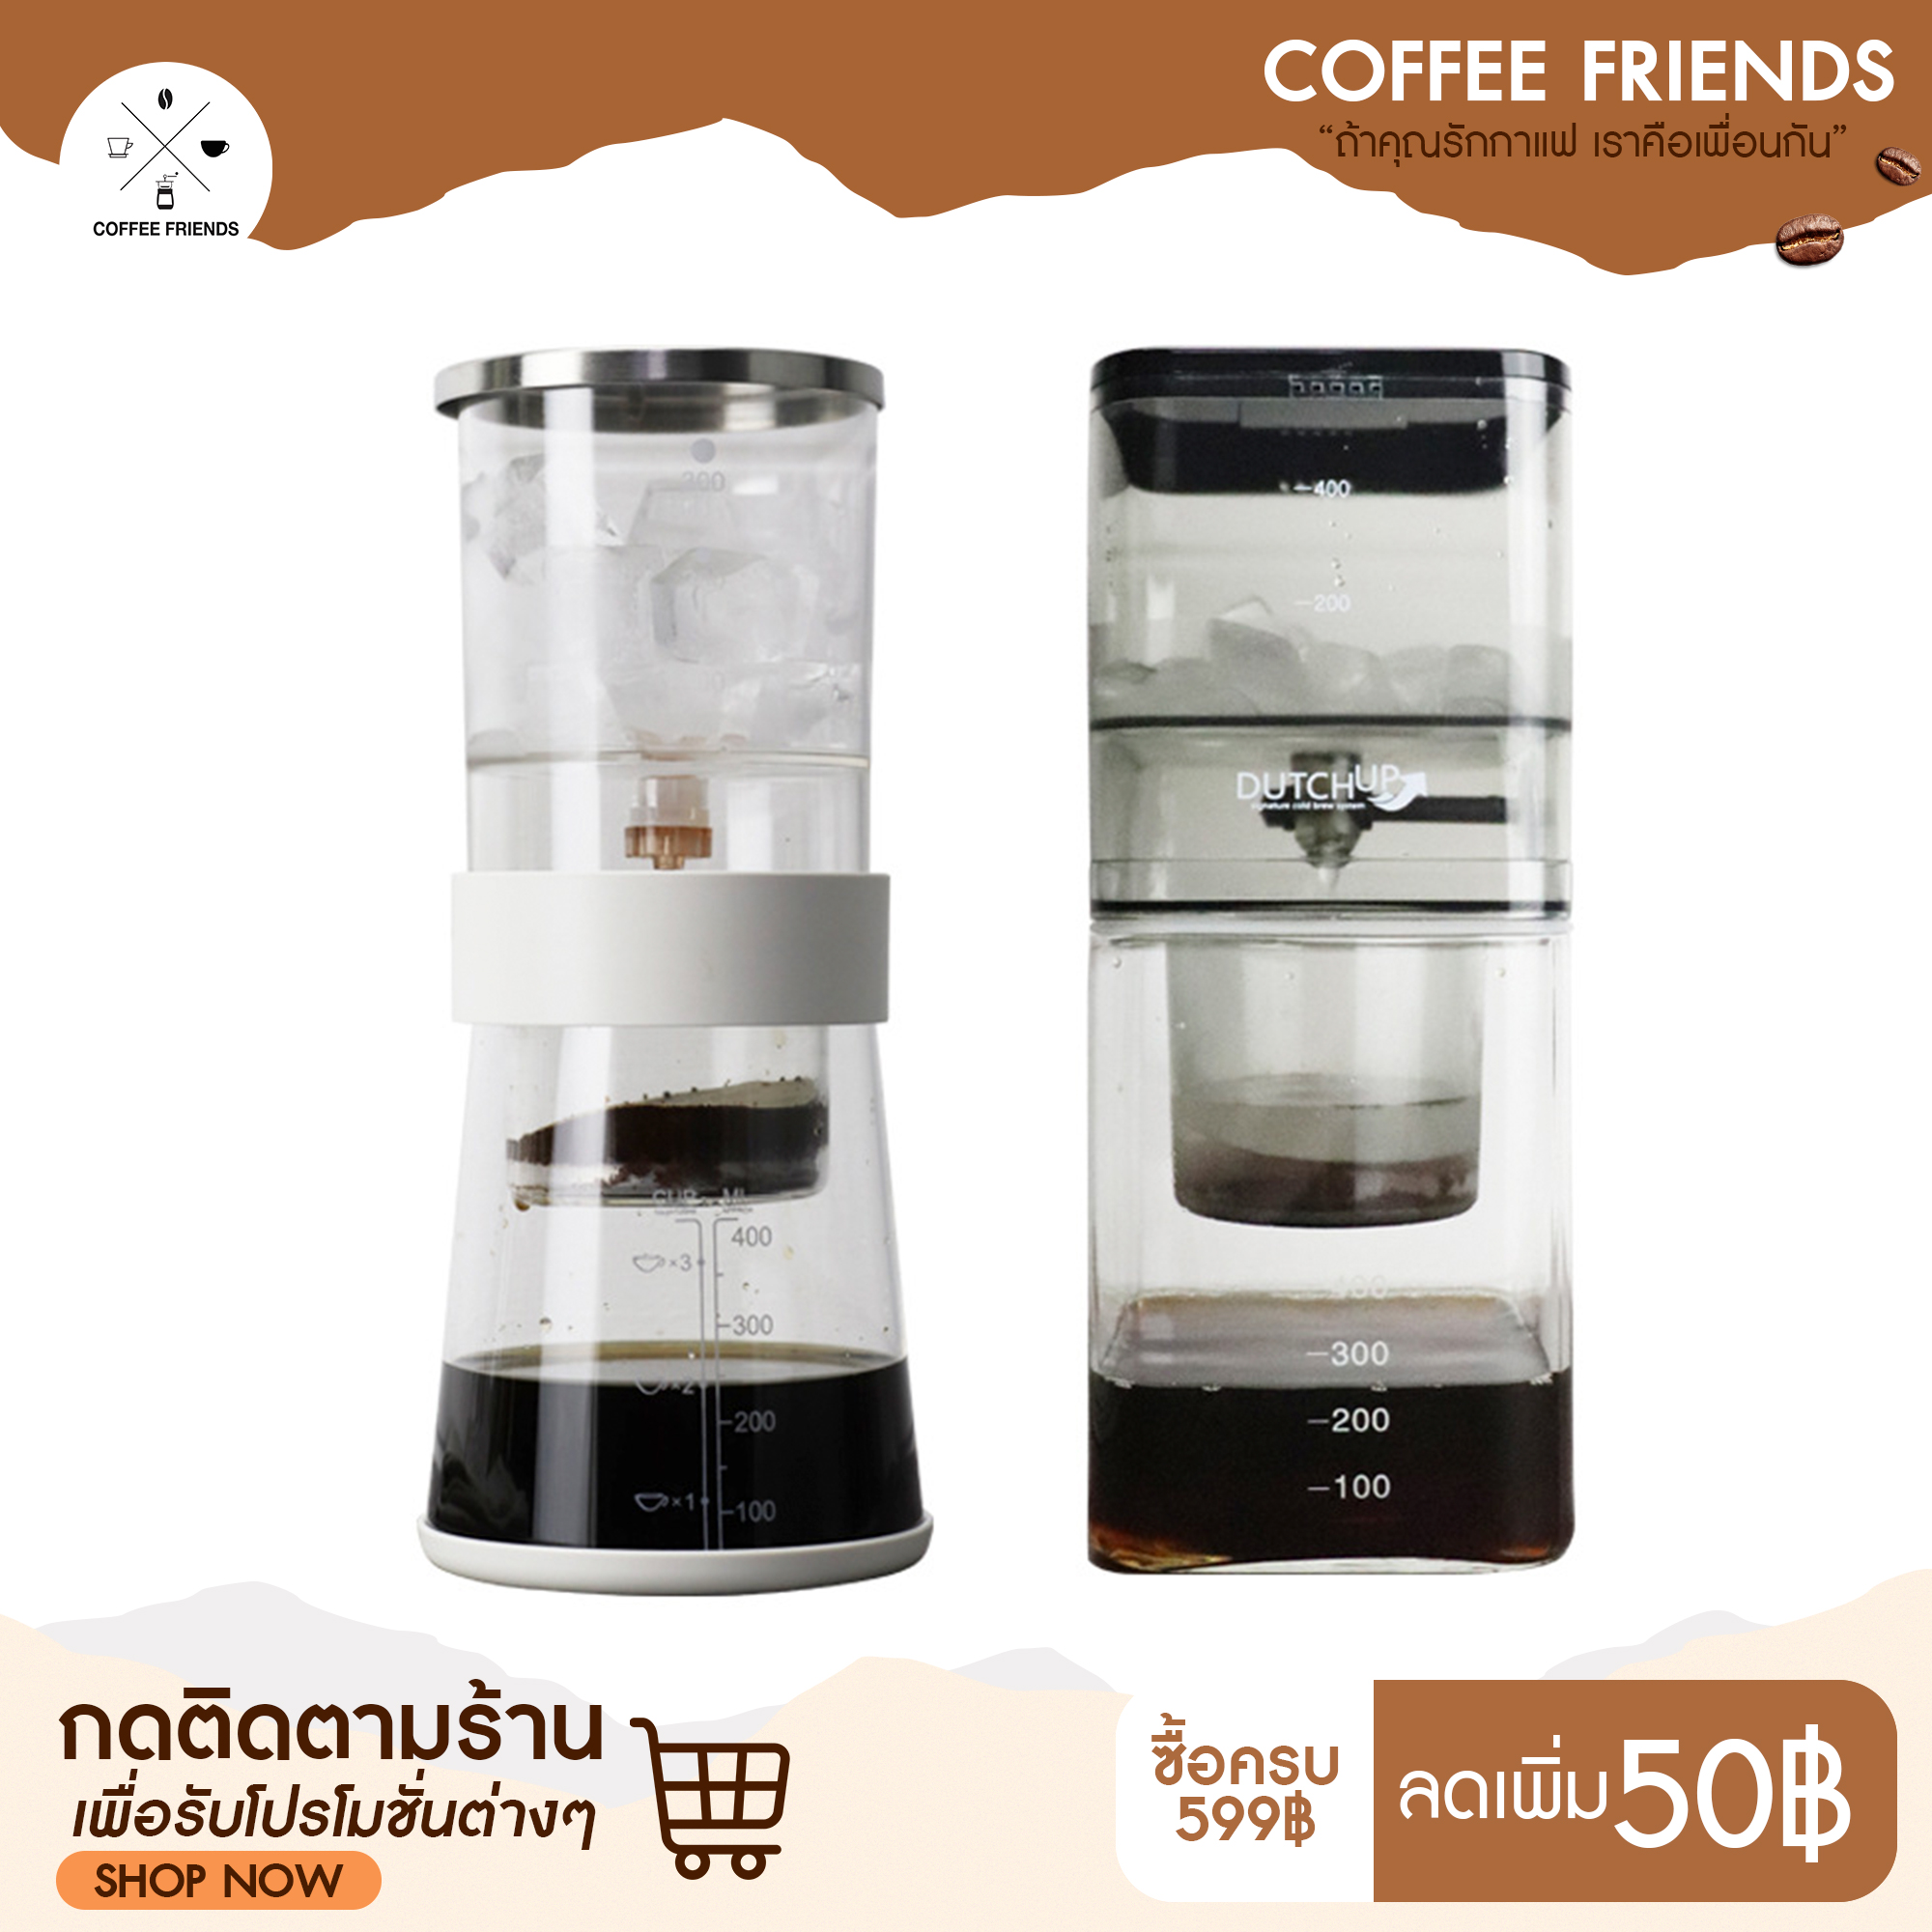 พร้อมส่งที่ไทย เครื่องทำกาแฟสกัดเย็น Fan Yi Cold brew  Cold drip  Dutch coffee maker - coffee friends